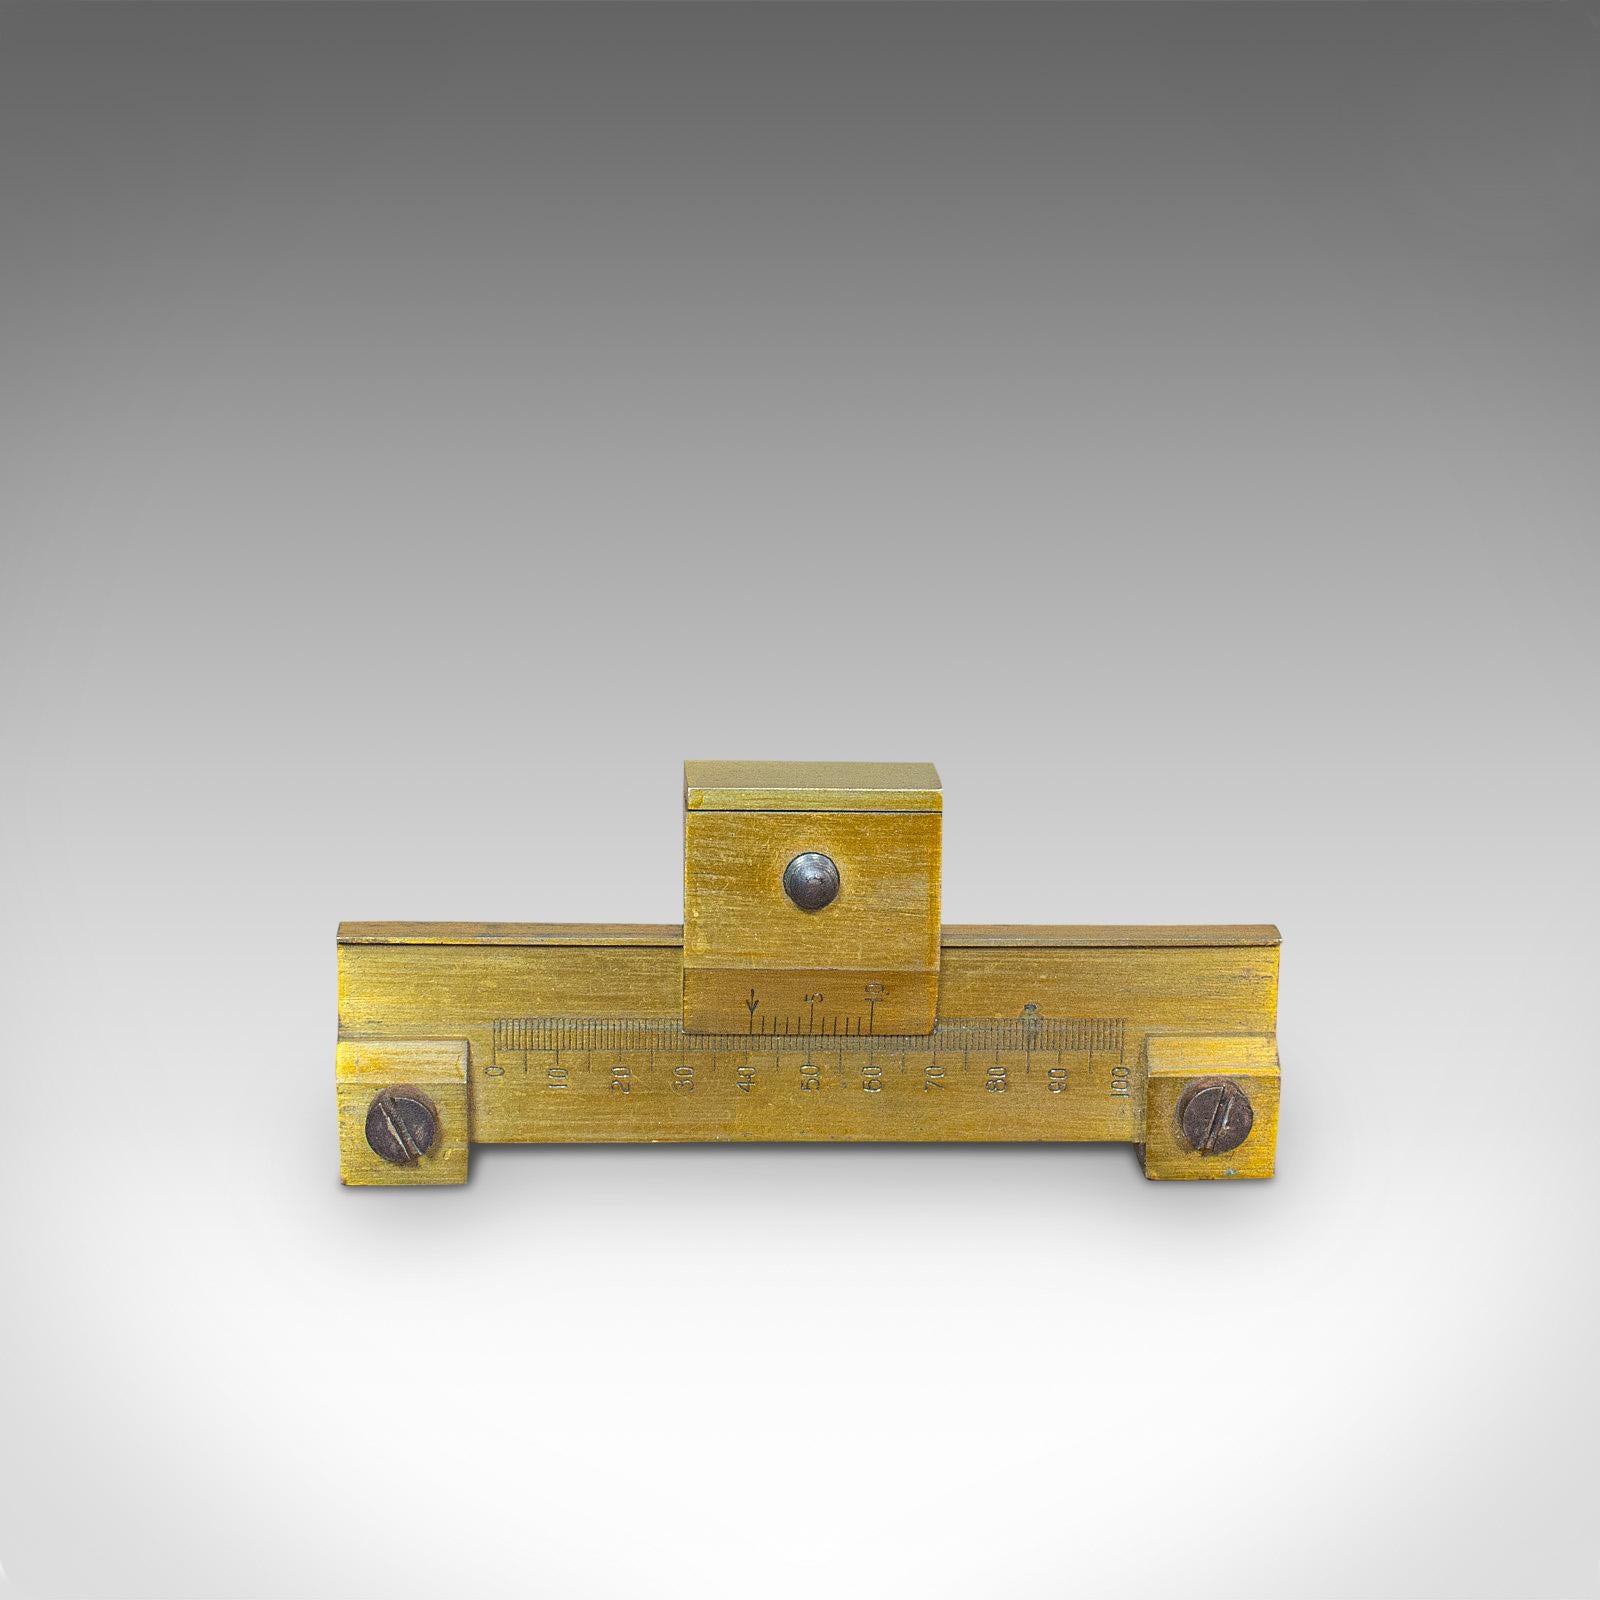 Vintage Pocket Slide Rule, English, Brass, Scientific, Measuring, Instrument 3